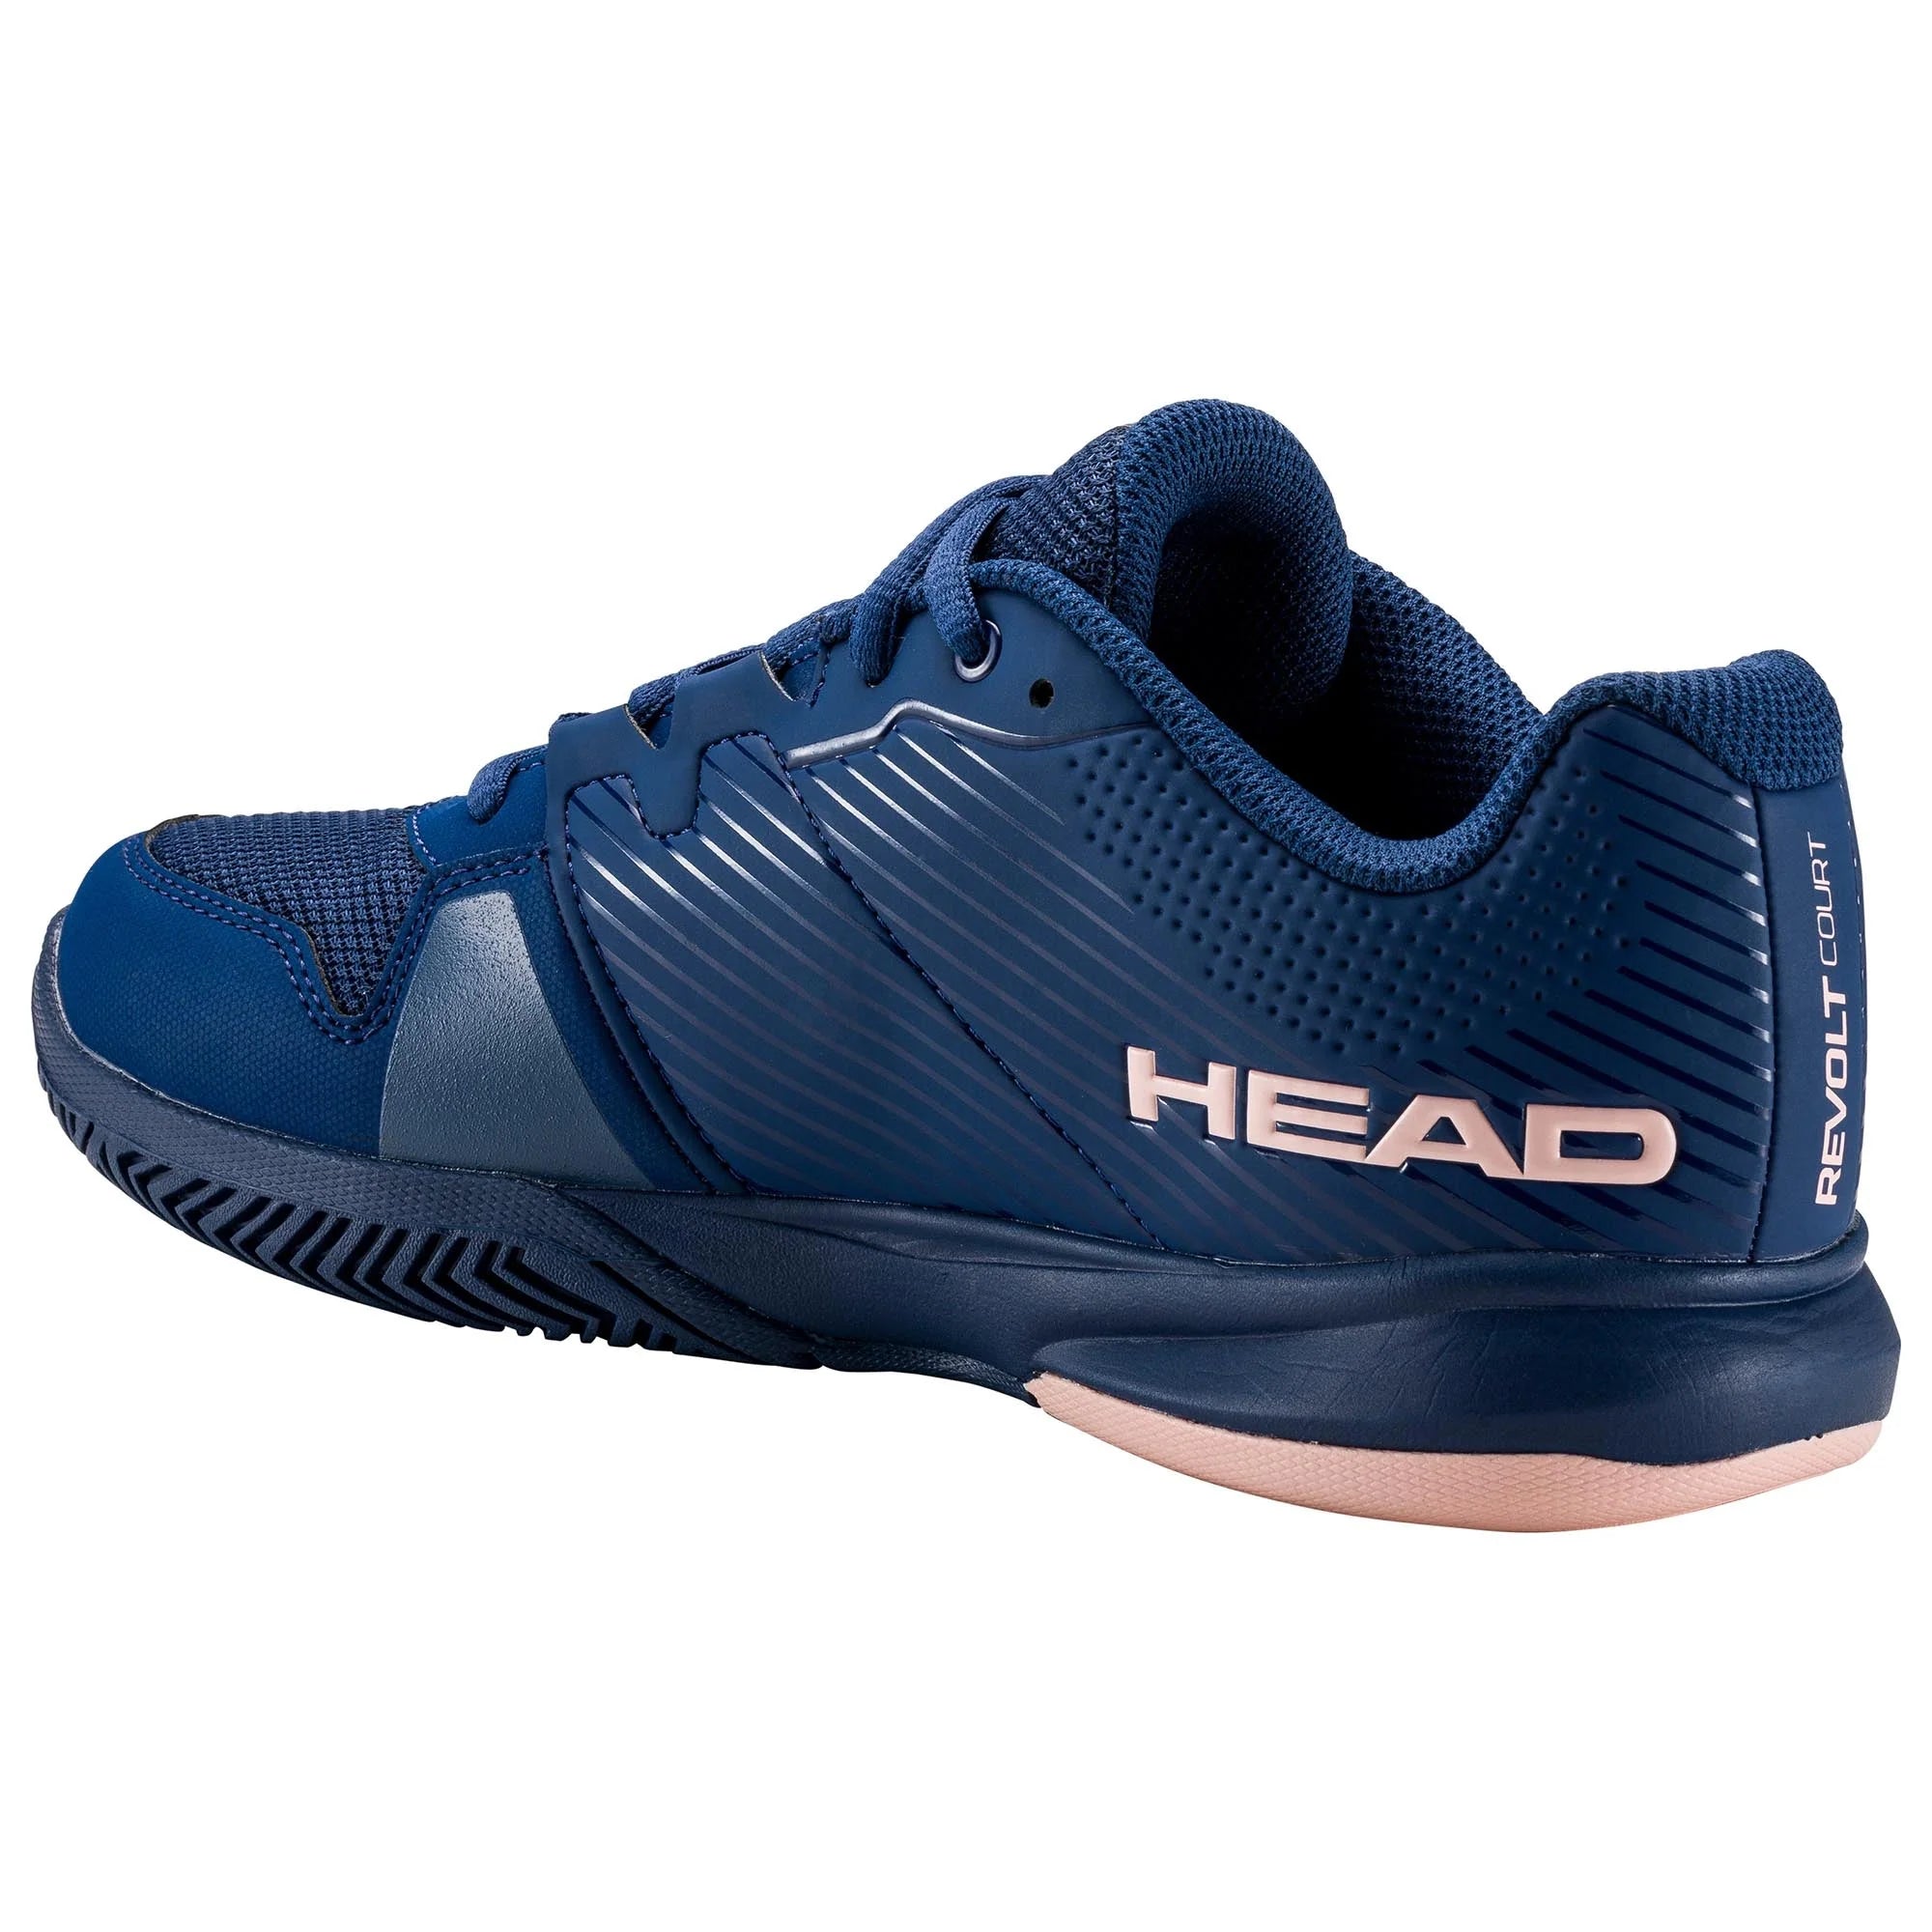 Head Womens Revolt Court Tennis Shoes - Multiple Colours